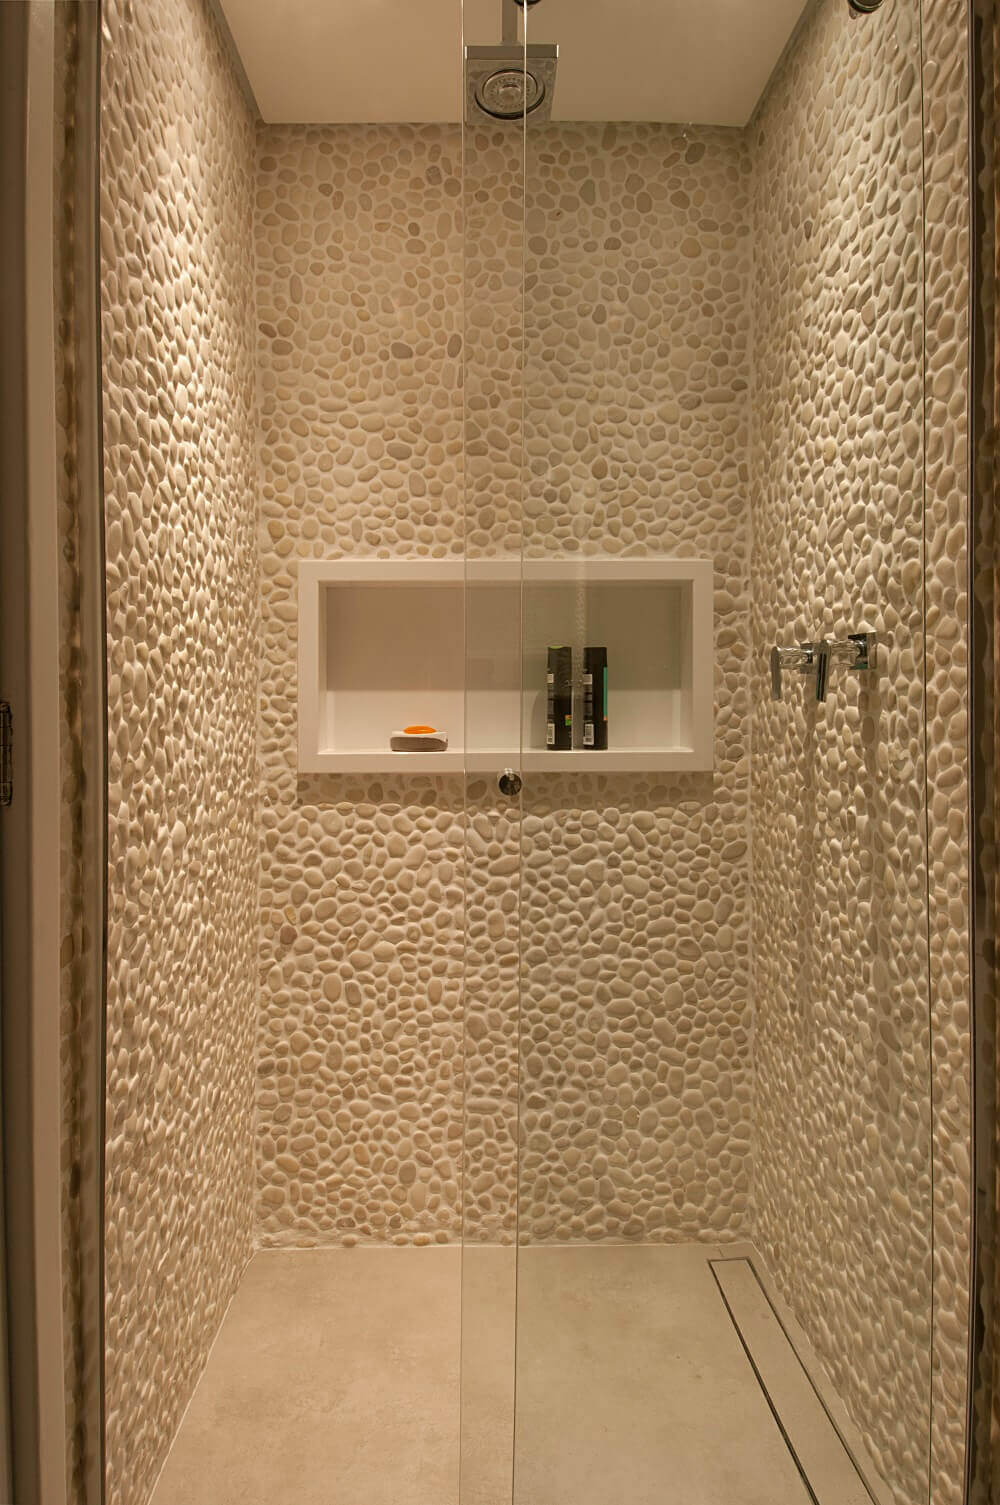 As paredes da área de banho levam seixos, pois são pedras que transmitem uma sensação de relaxamento